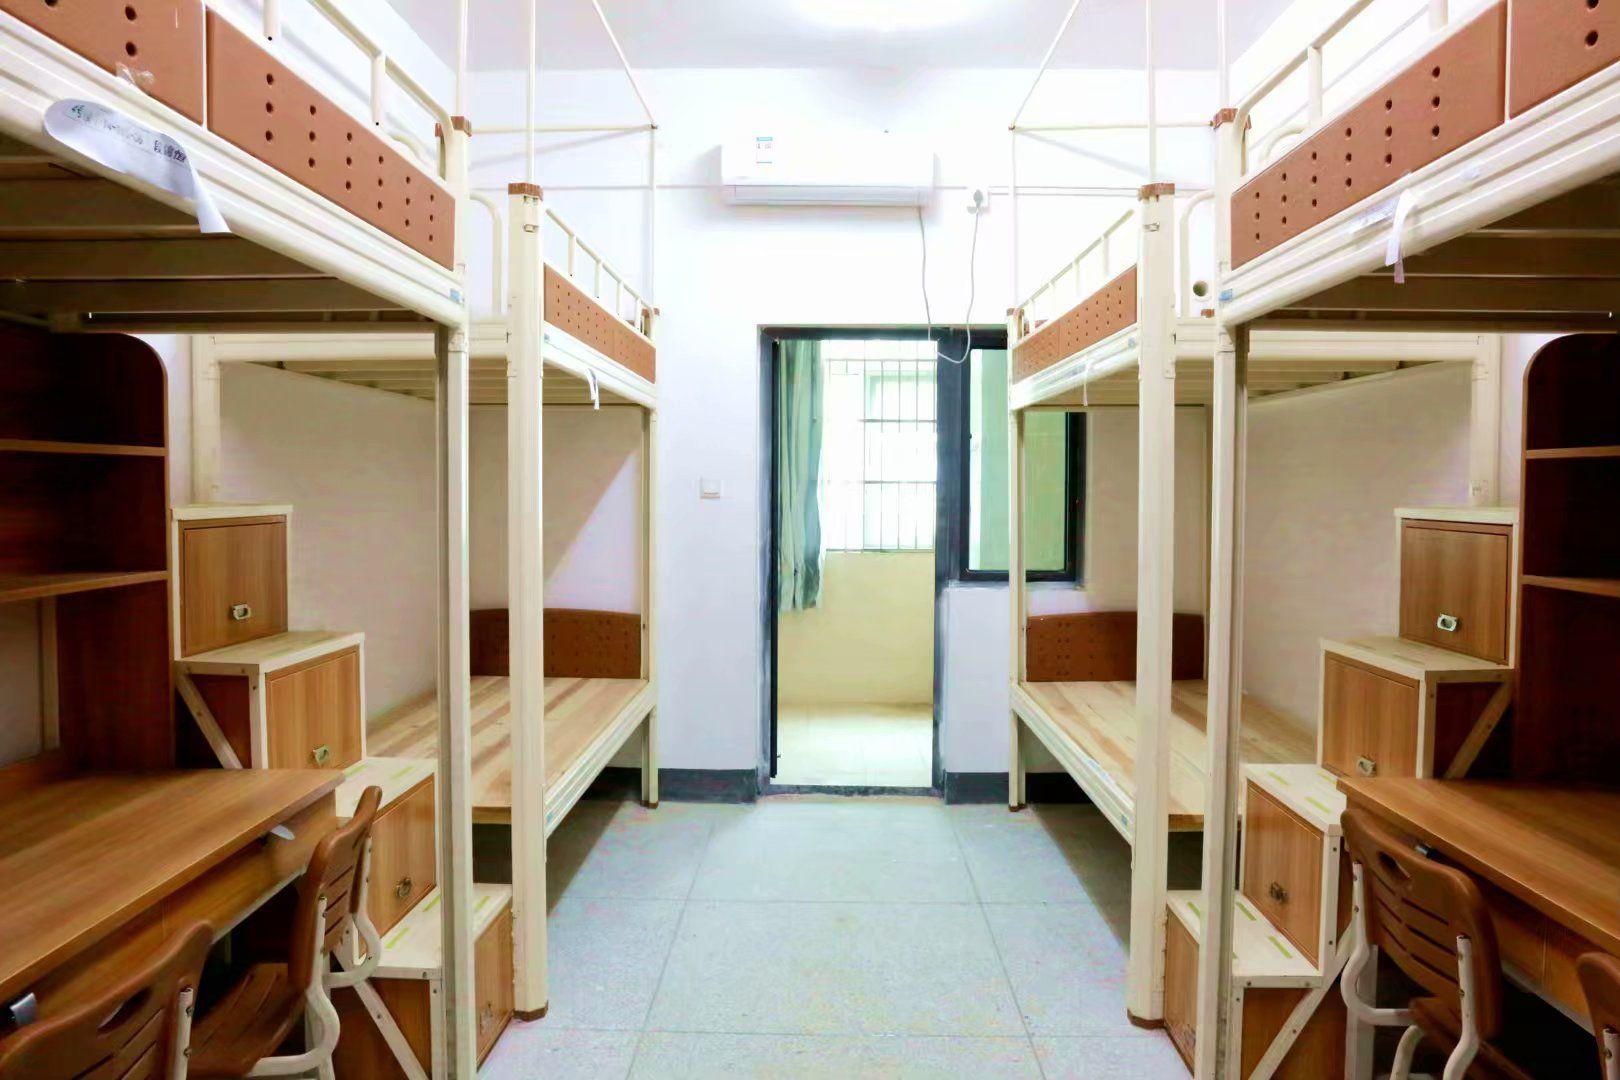 武汉长江职业学院寝室图片